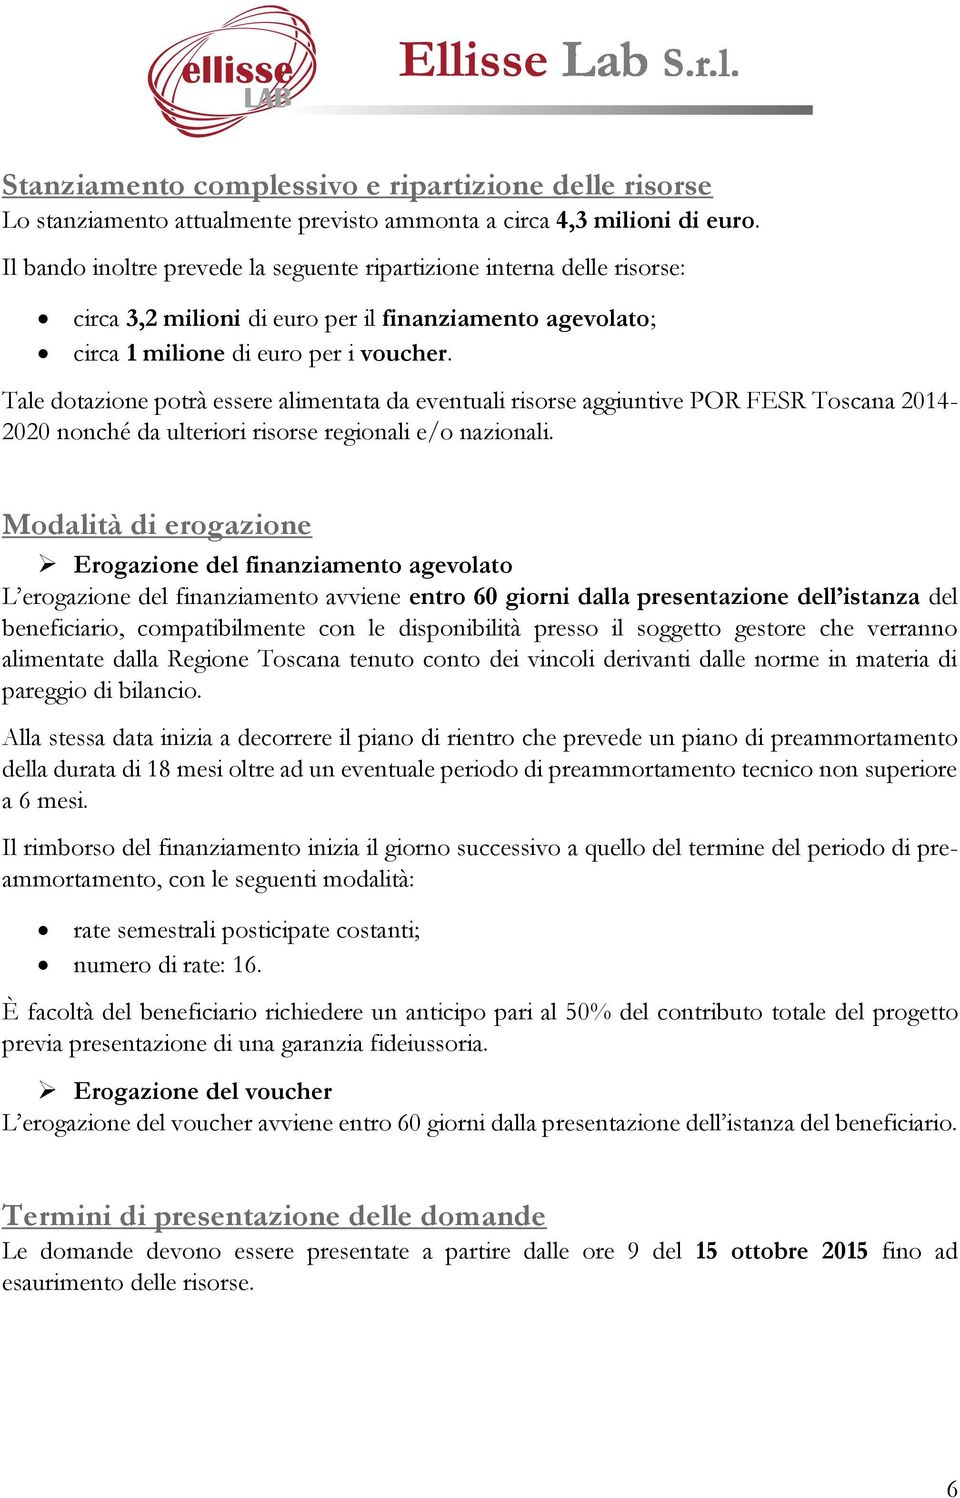 Tale dotazione potrà essere alimentata da eventuali risorse aggiuntive POR FESR Toscana 2014-2020 nonché da ulteriori risorse regionali e/o nazionali.